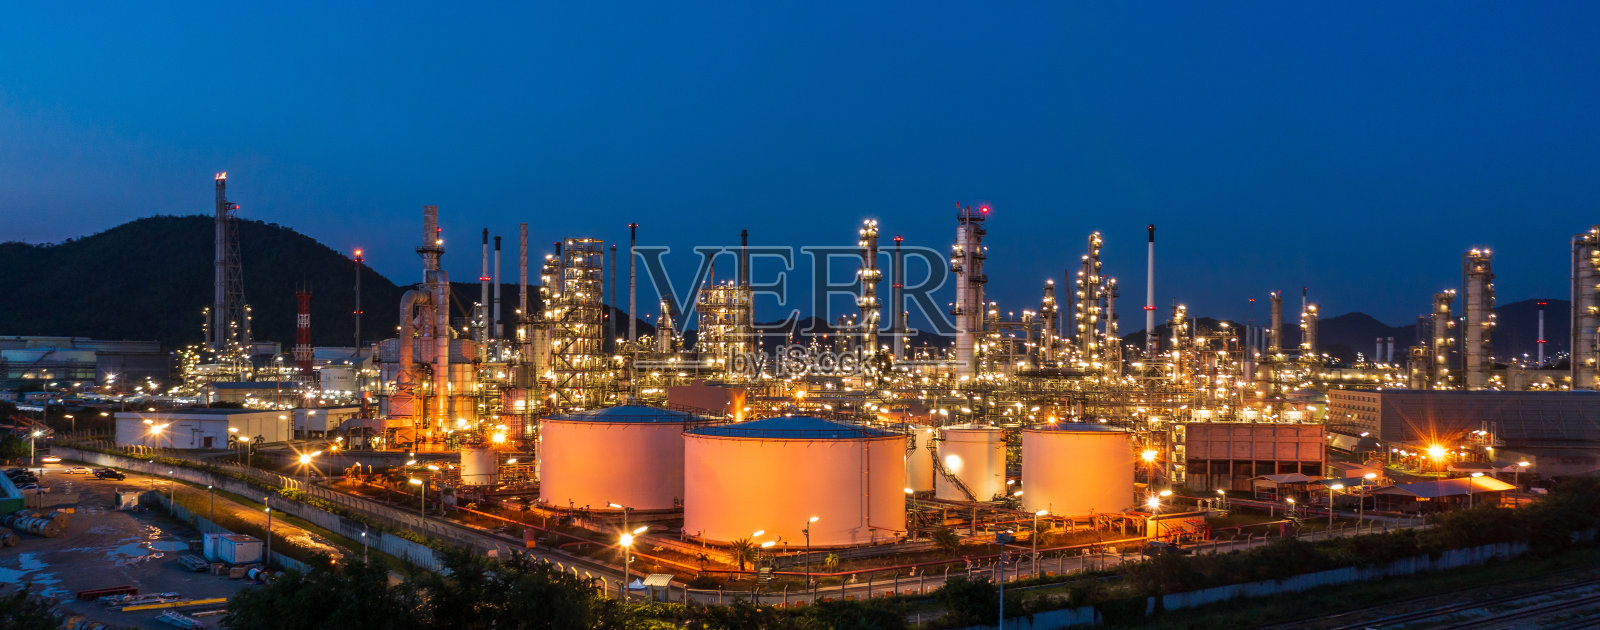 鸟瞰图。炼油厂和储油罐在黄昏和夜间。石化工业。横幅全景照片摄影图片